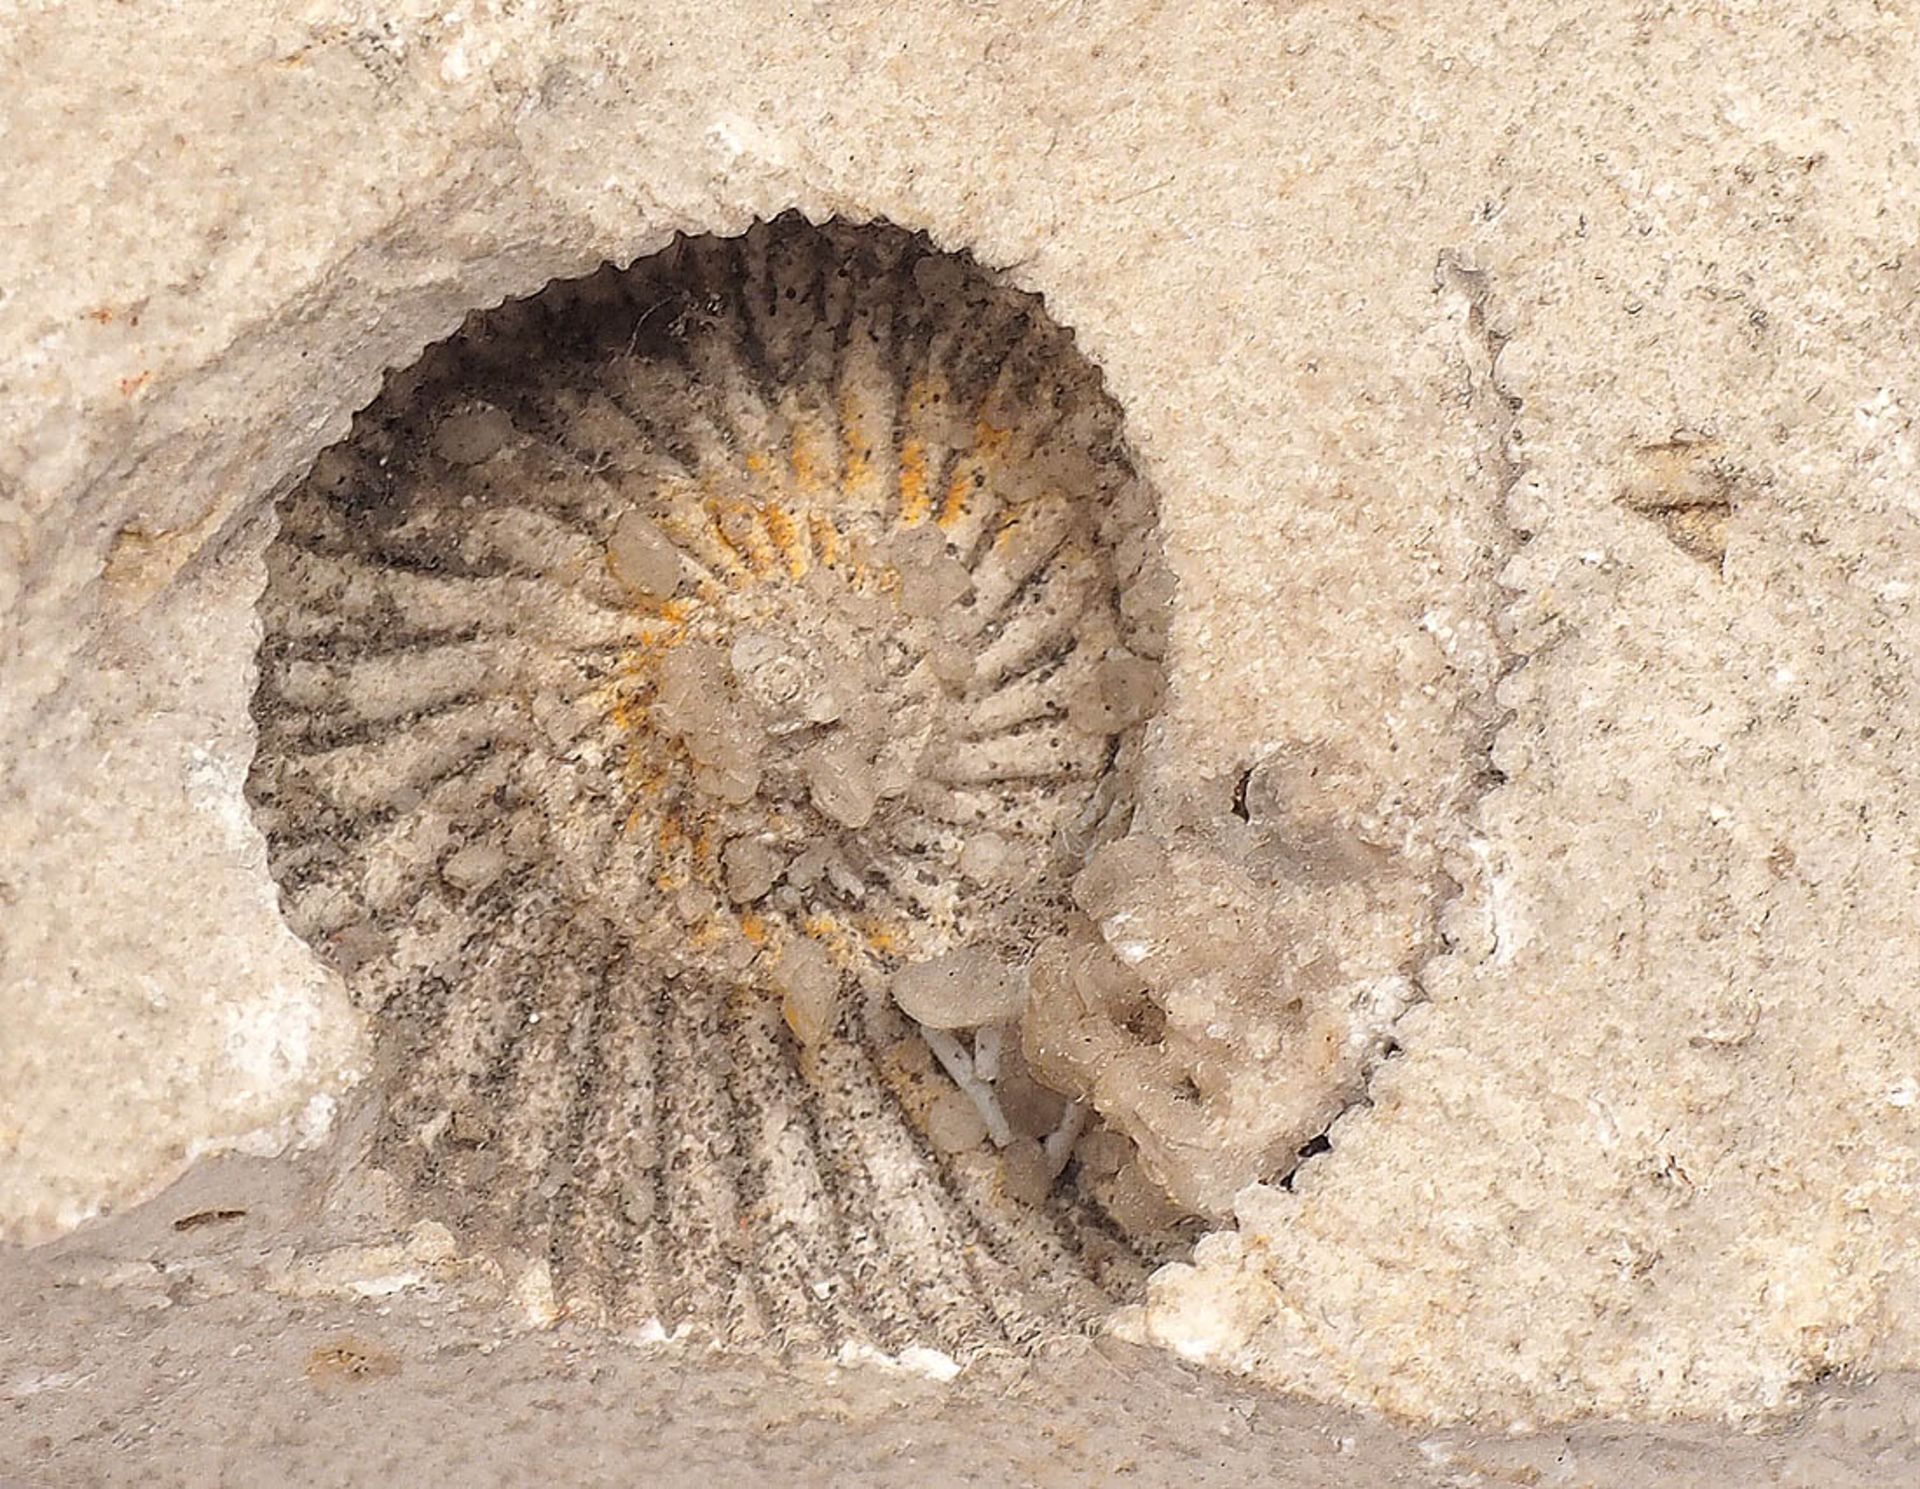 Sechs Versteinerungen Größtenteils Solnhofener Schiefer. Tiere, Muscheln und Ammoniten, - Bild 4 aus 4